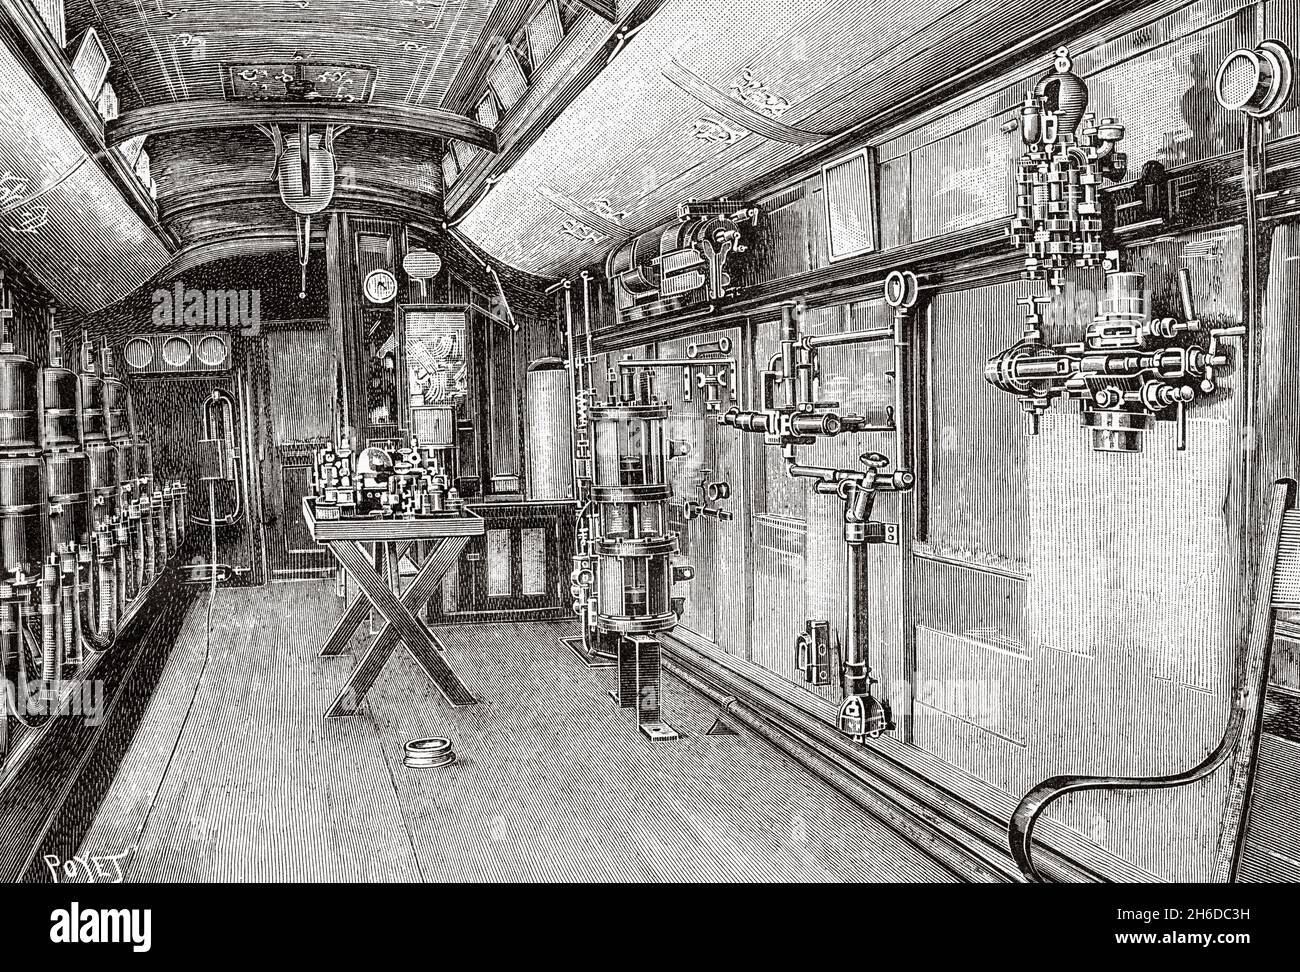 Intérieur du train de voiture scolaire américain, États-Unis.Ancienne illustration gravée du XIXe siècle de la nature 1897 Banque D'Images